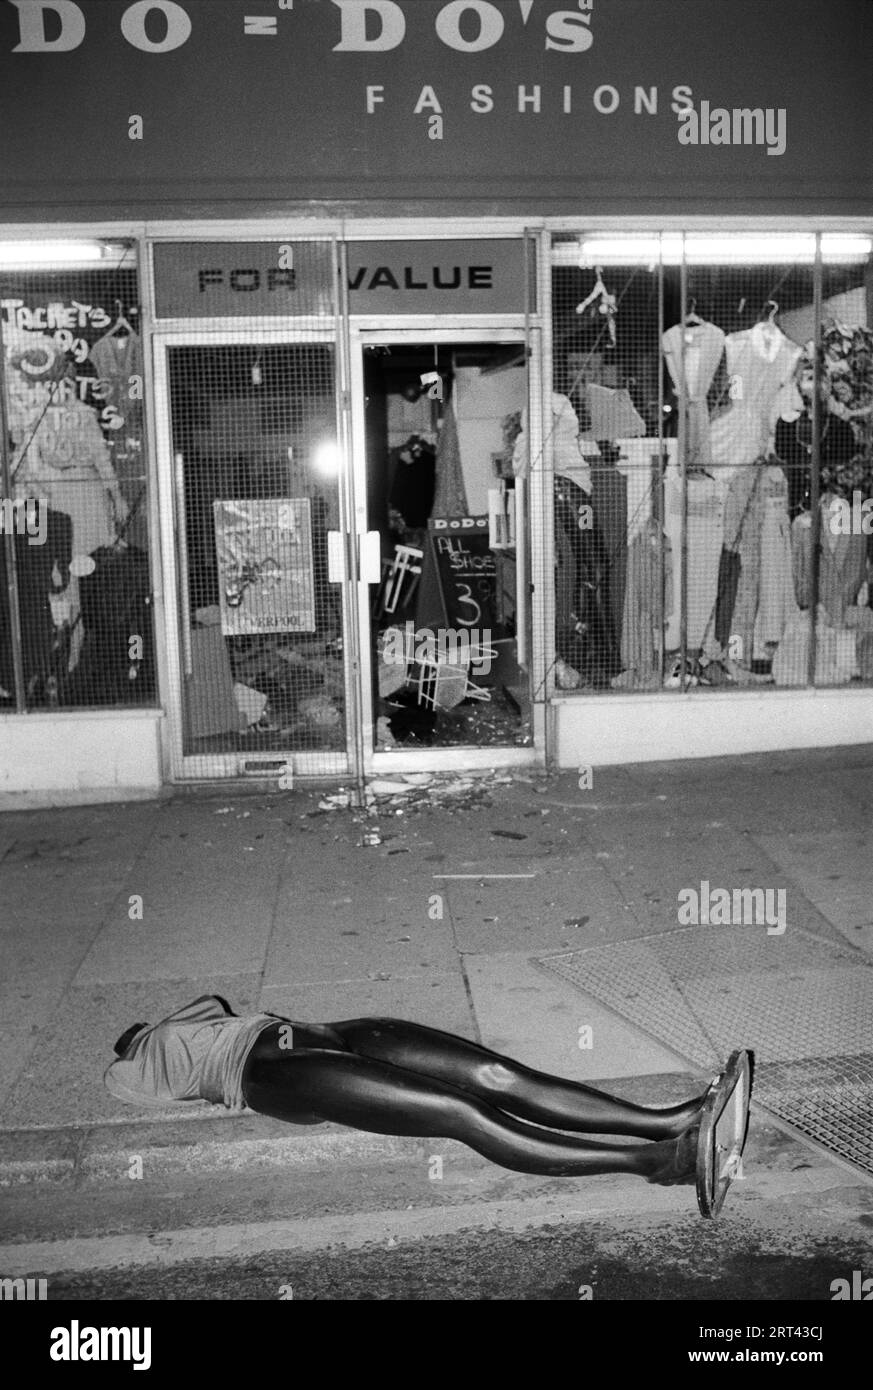 Toxteth Riots 1980s UK. Un magasin pillé, le magasin Do Do Do's Fashions, un mannequin repose sur le trottoir. Toxteth, Liverpool 8, Angleterre juillet 1981. HOMER SYKES Banque D'Images